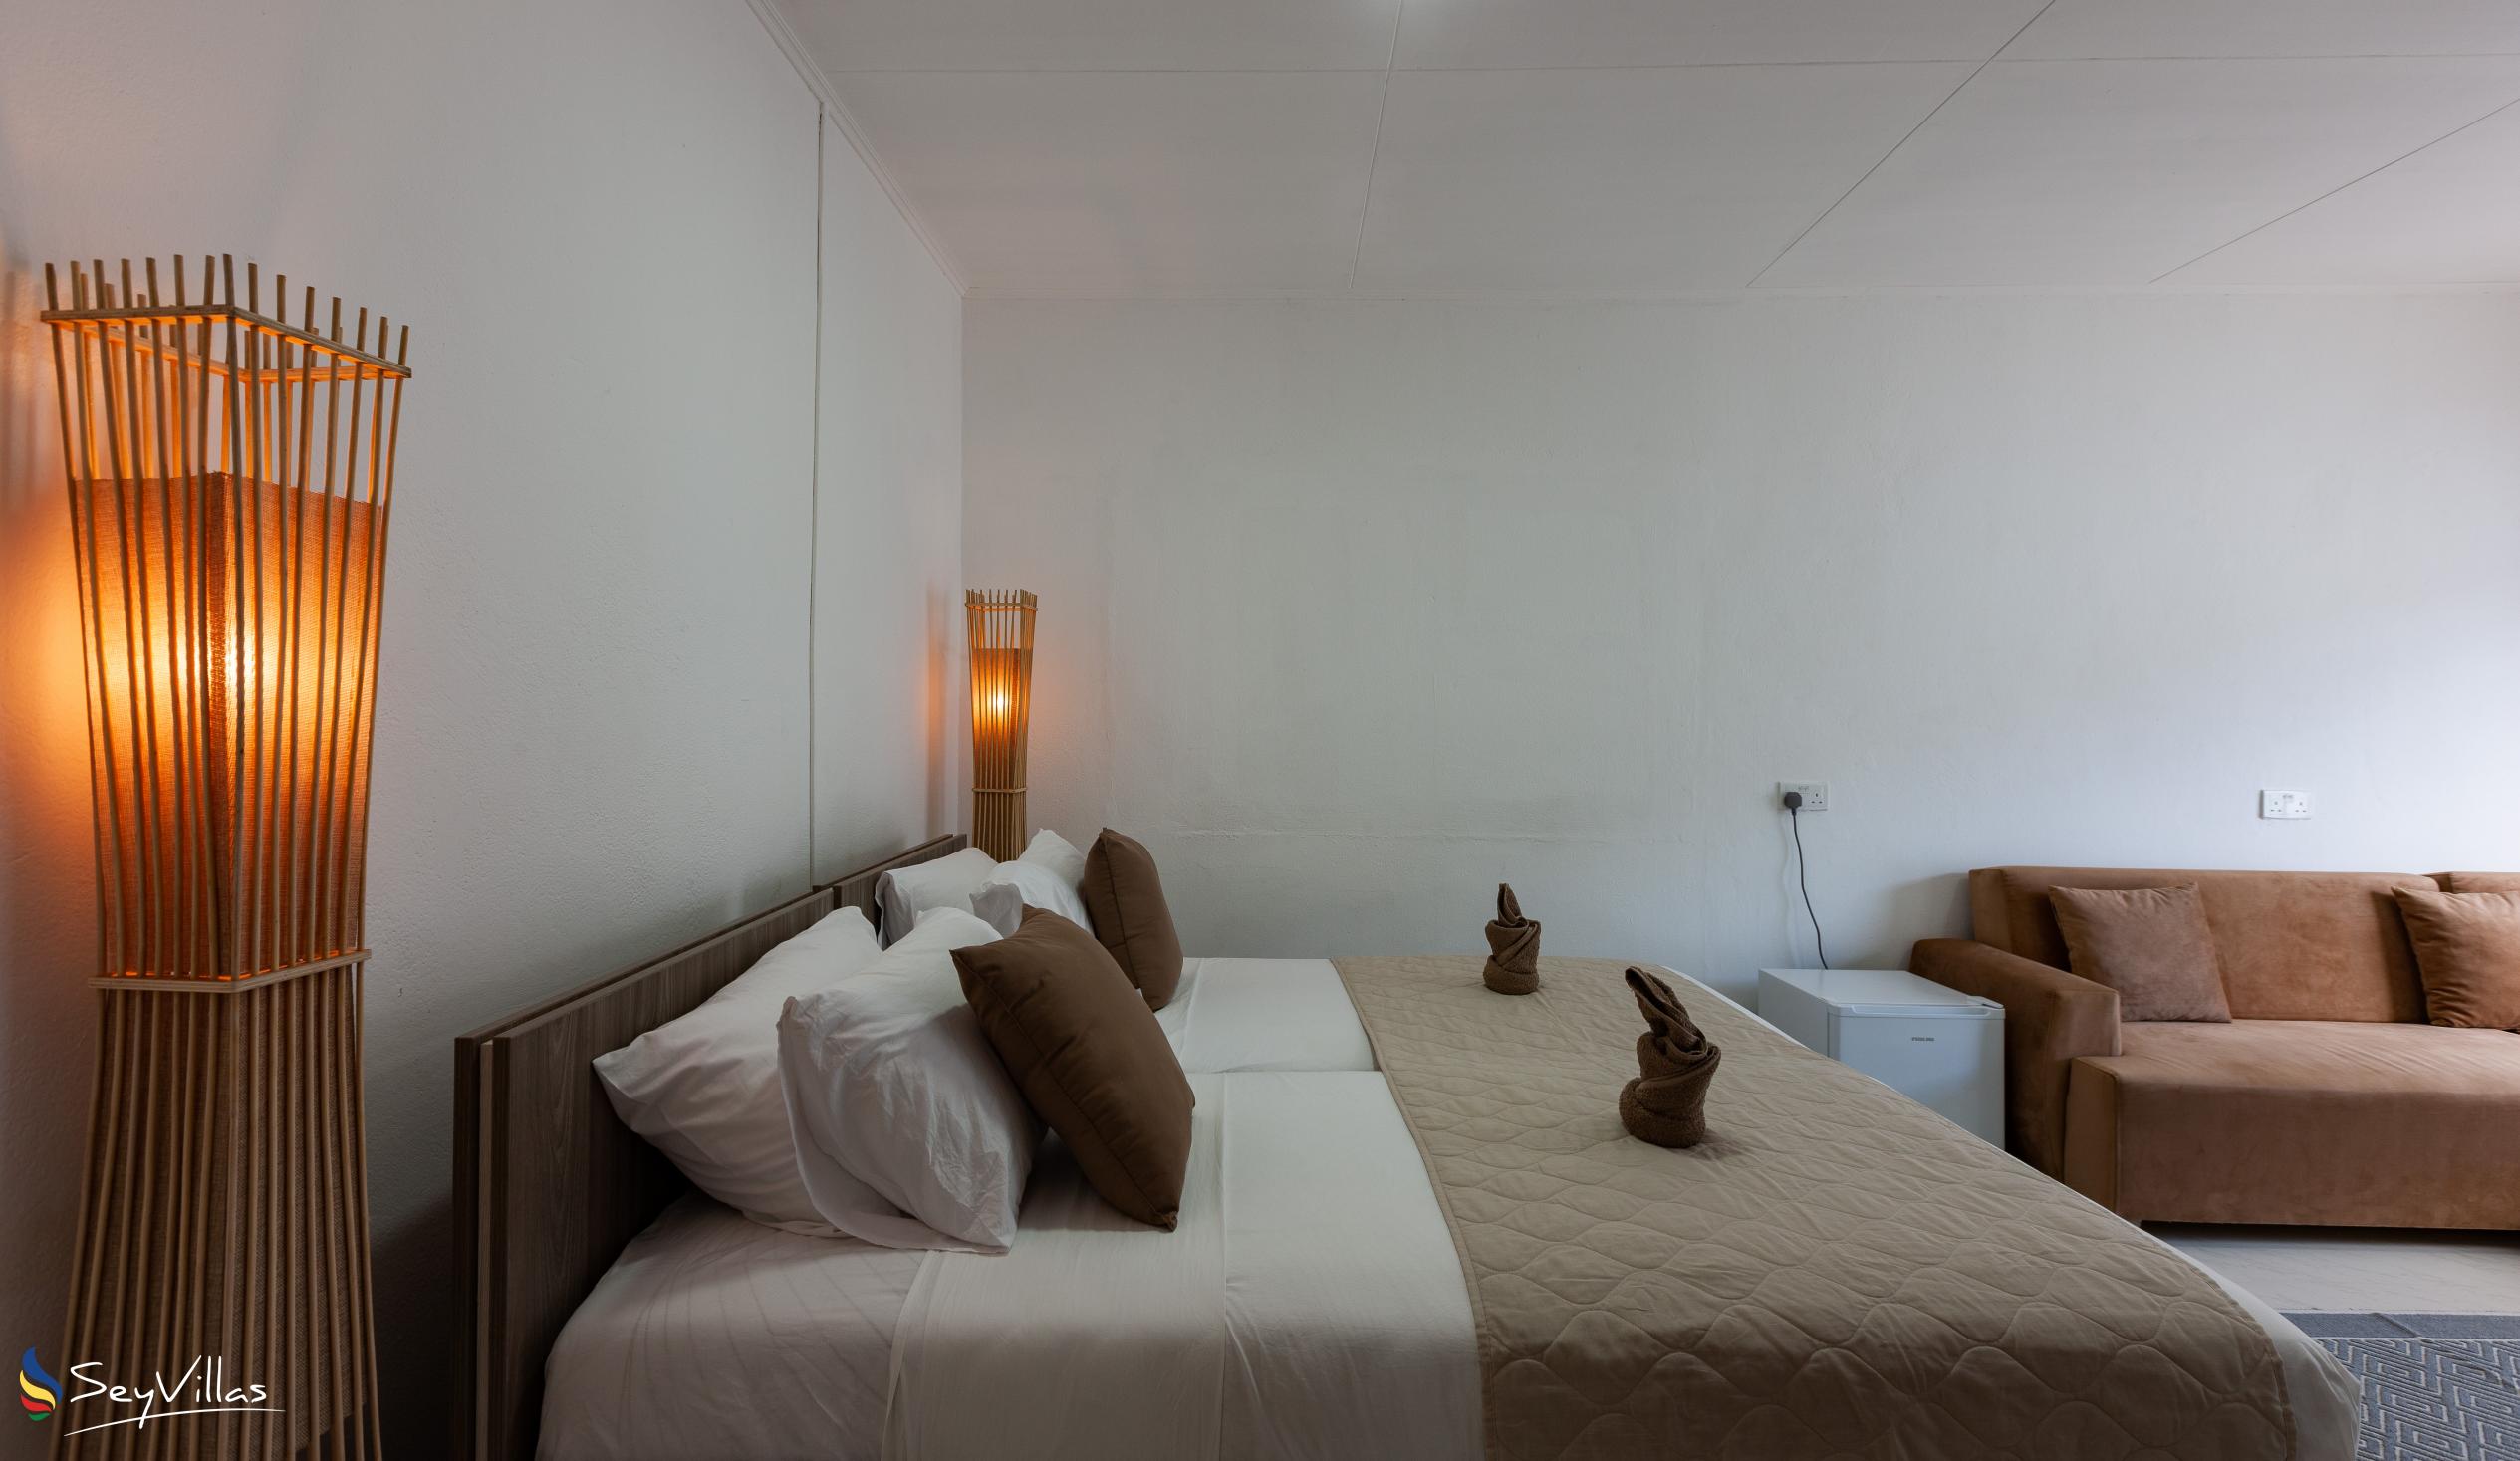 Photo 40: Hotel Plein Soleil - Double Room - Praslin (Seychelles)